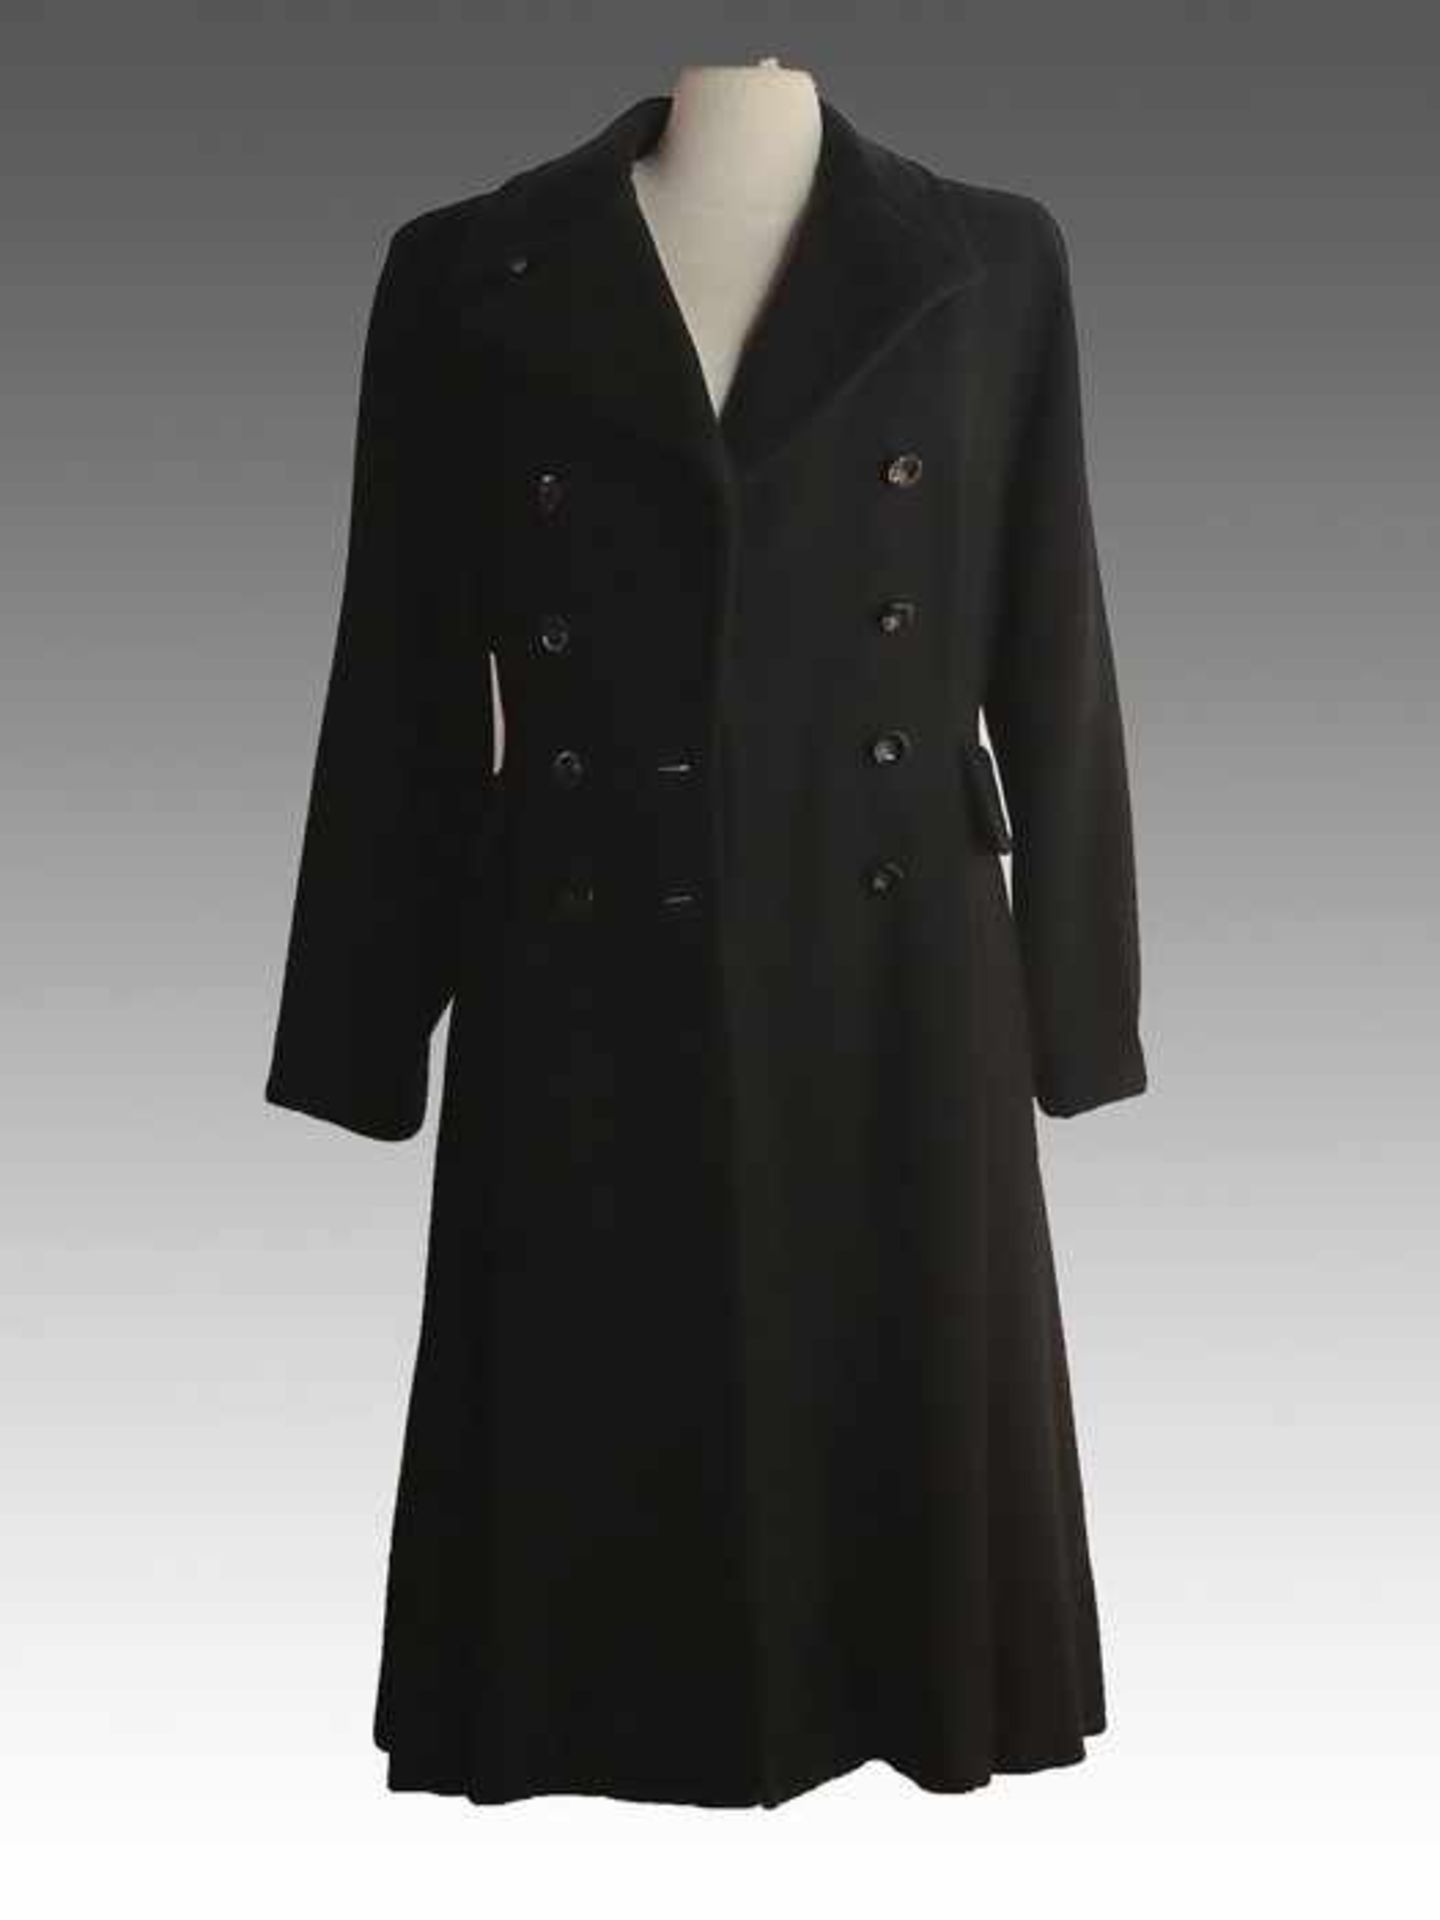 Vintage - DamenmantelWolle, schwarz, langer schmaler Schnitt, 2 Knopfreihen, Taschenklappen,